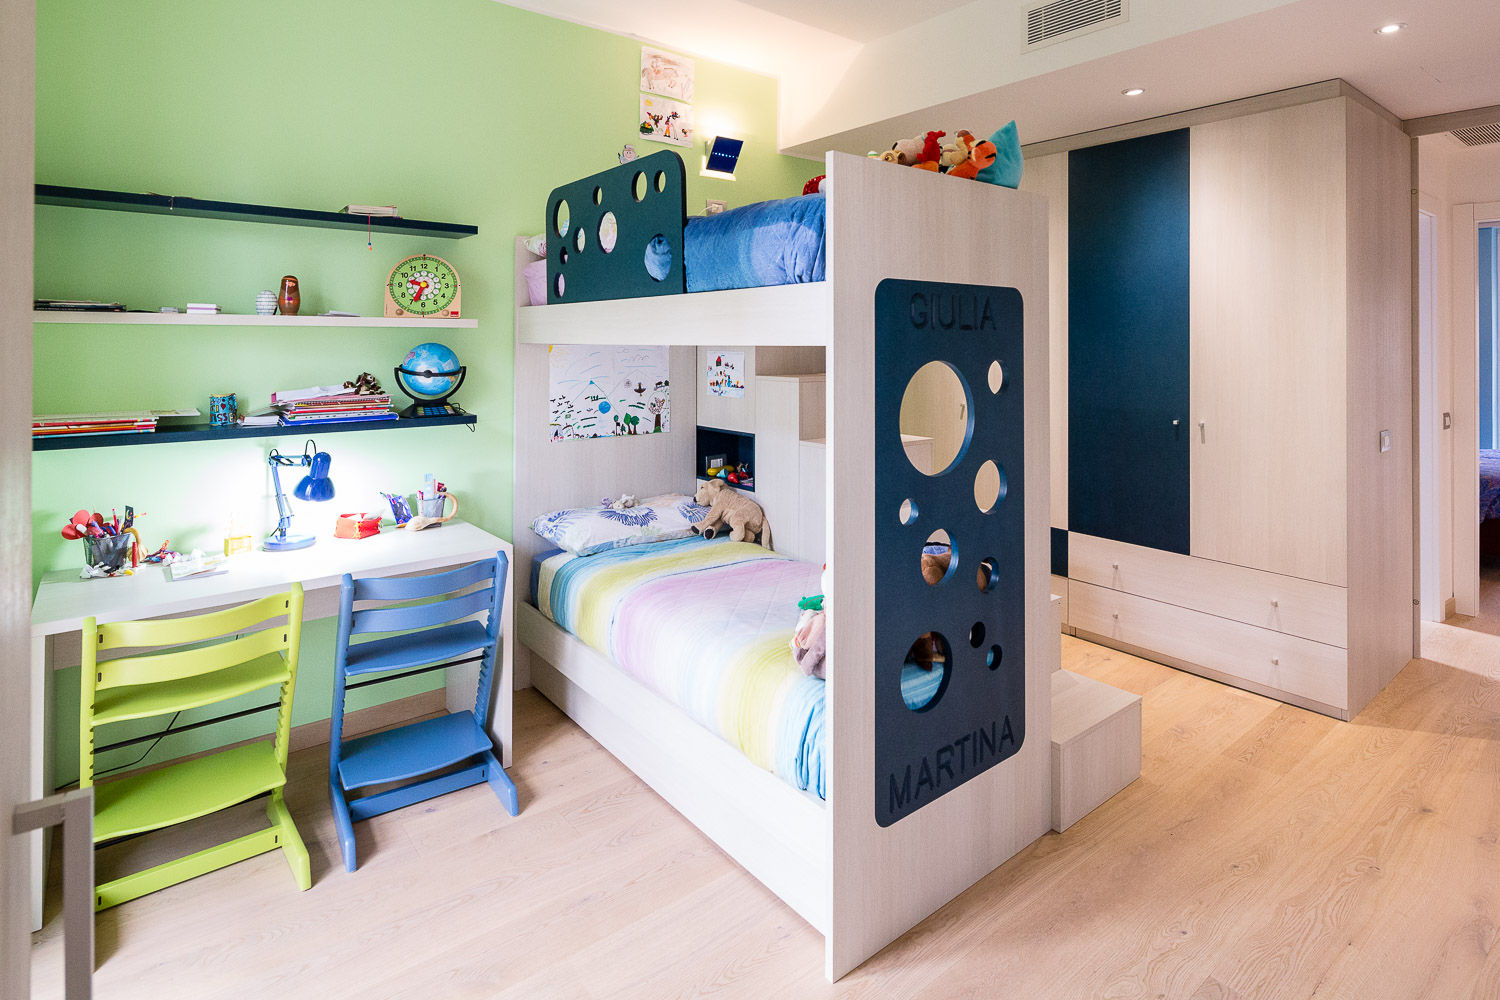 Five LIttle pigs, 23bassi studio di architettura 23bassi studio di architettura Dormitorios infantiles